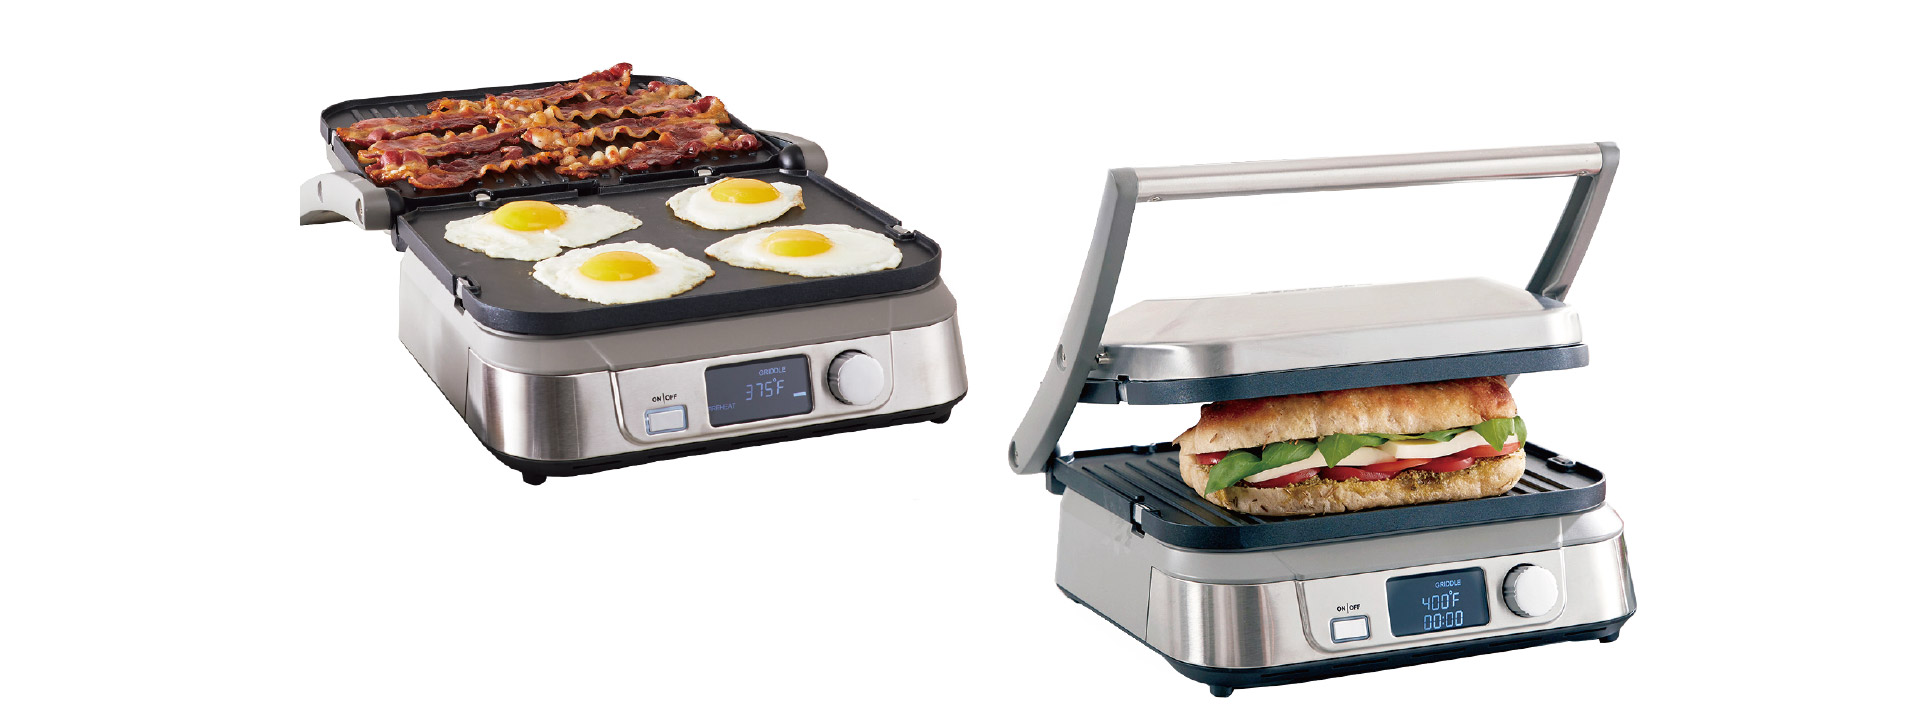 用戶使用接觸式燒烤爐烹調食物時，可把頂蓋打開或合上。